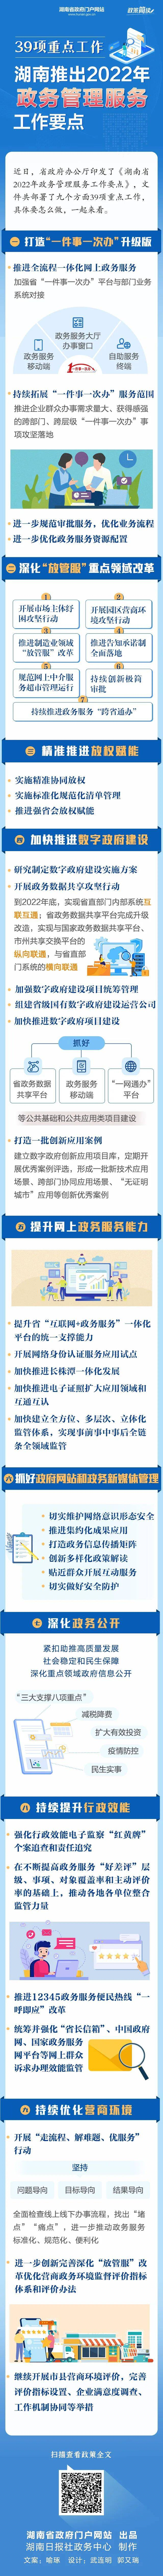 图解丨39项重点工作 湖南推出2022年政务管理服务工作要点